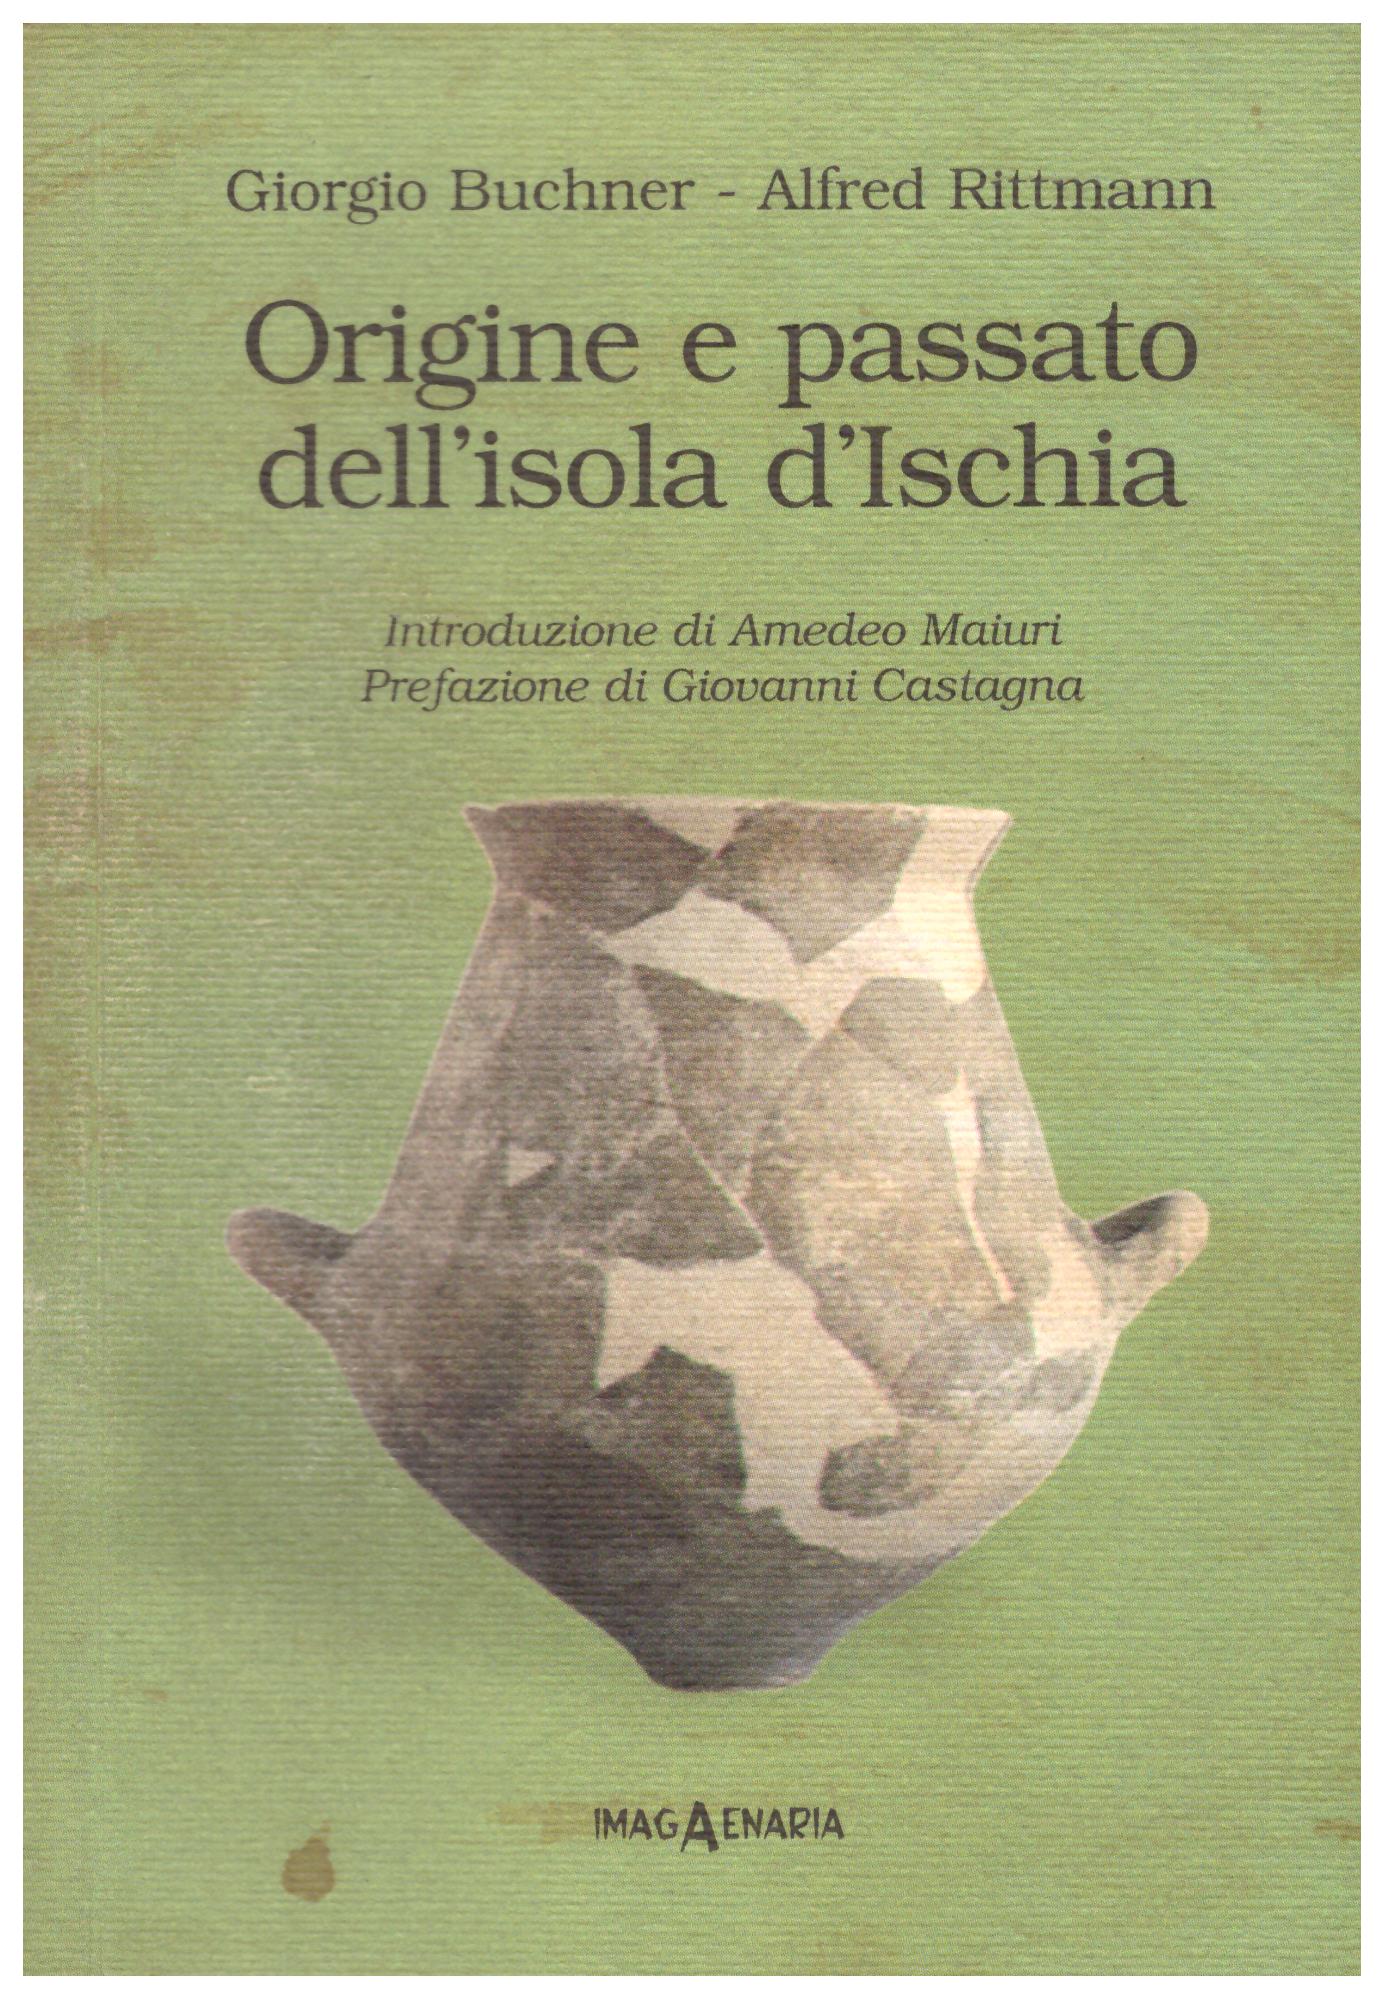 Titolo:Origine e passato dell'isola di Ischia    Autore: Giorgio Buchner Alfred Rittmann    Editore: imagAenaria